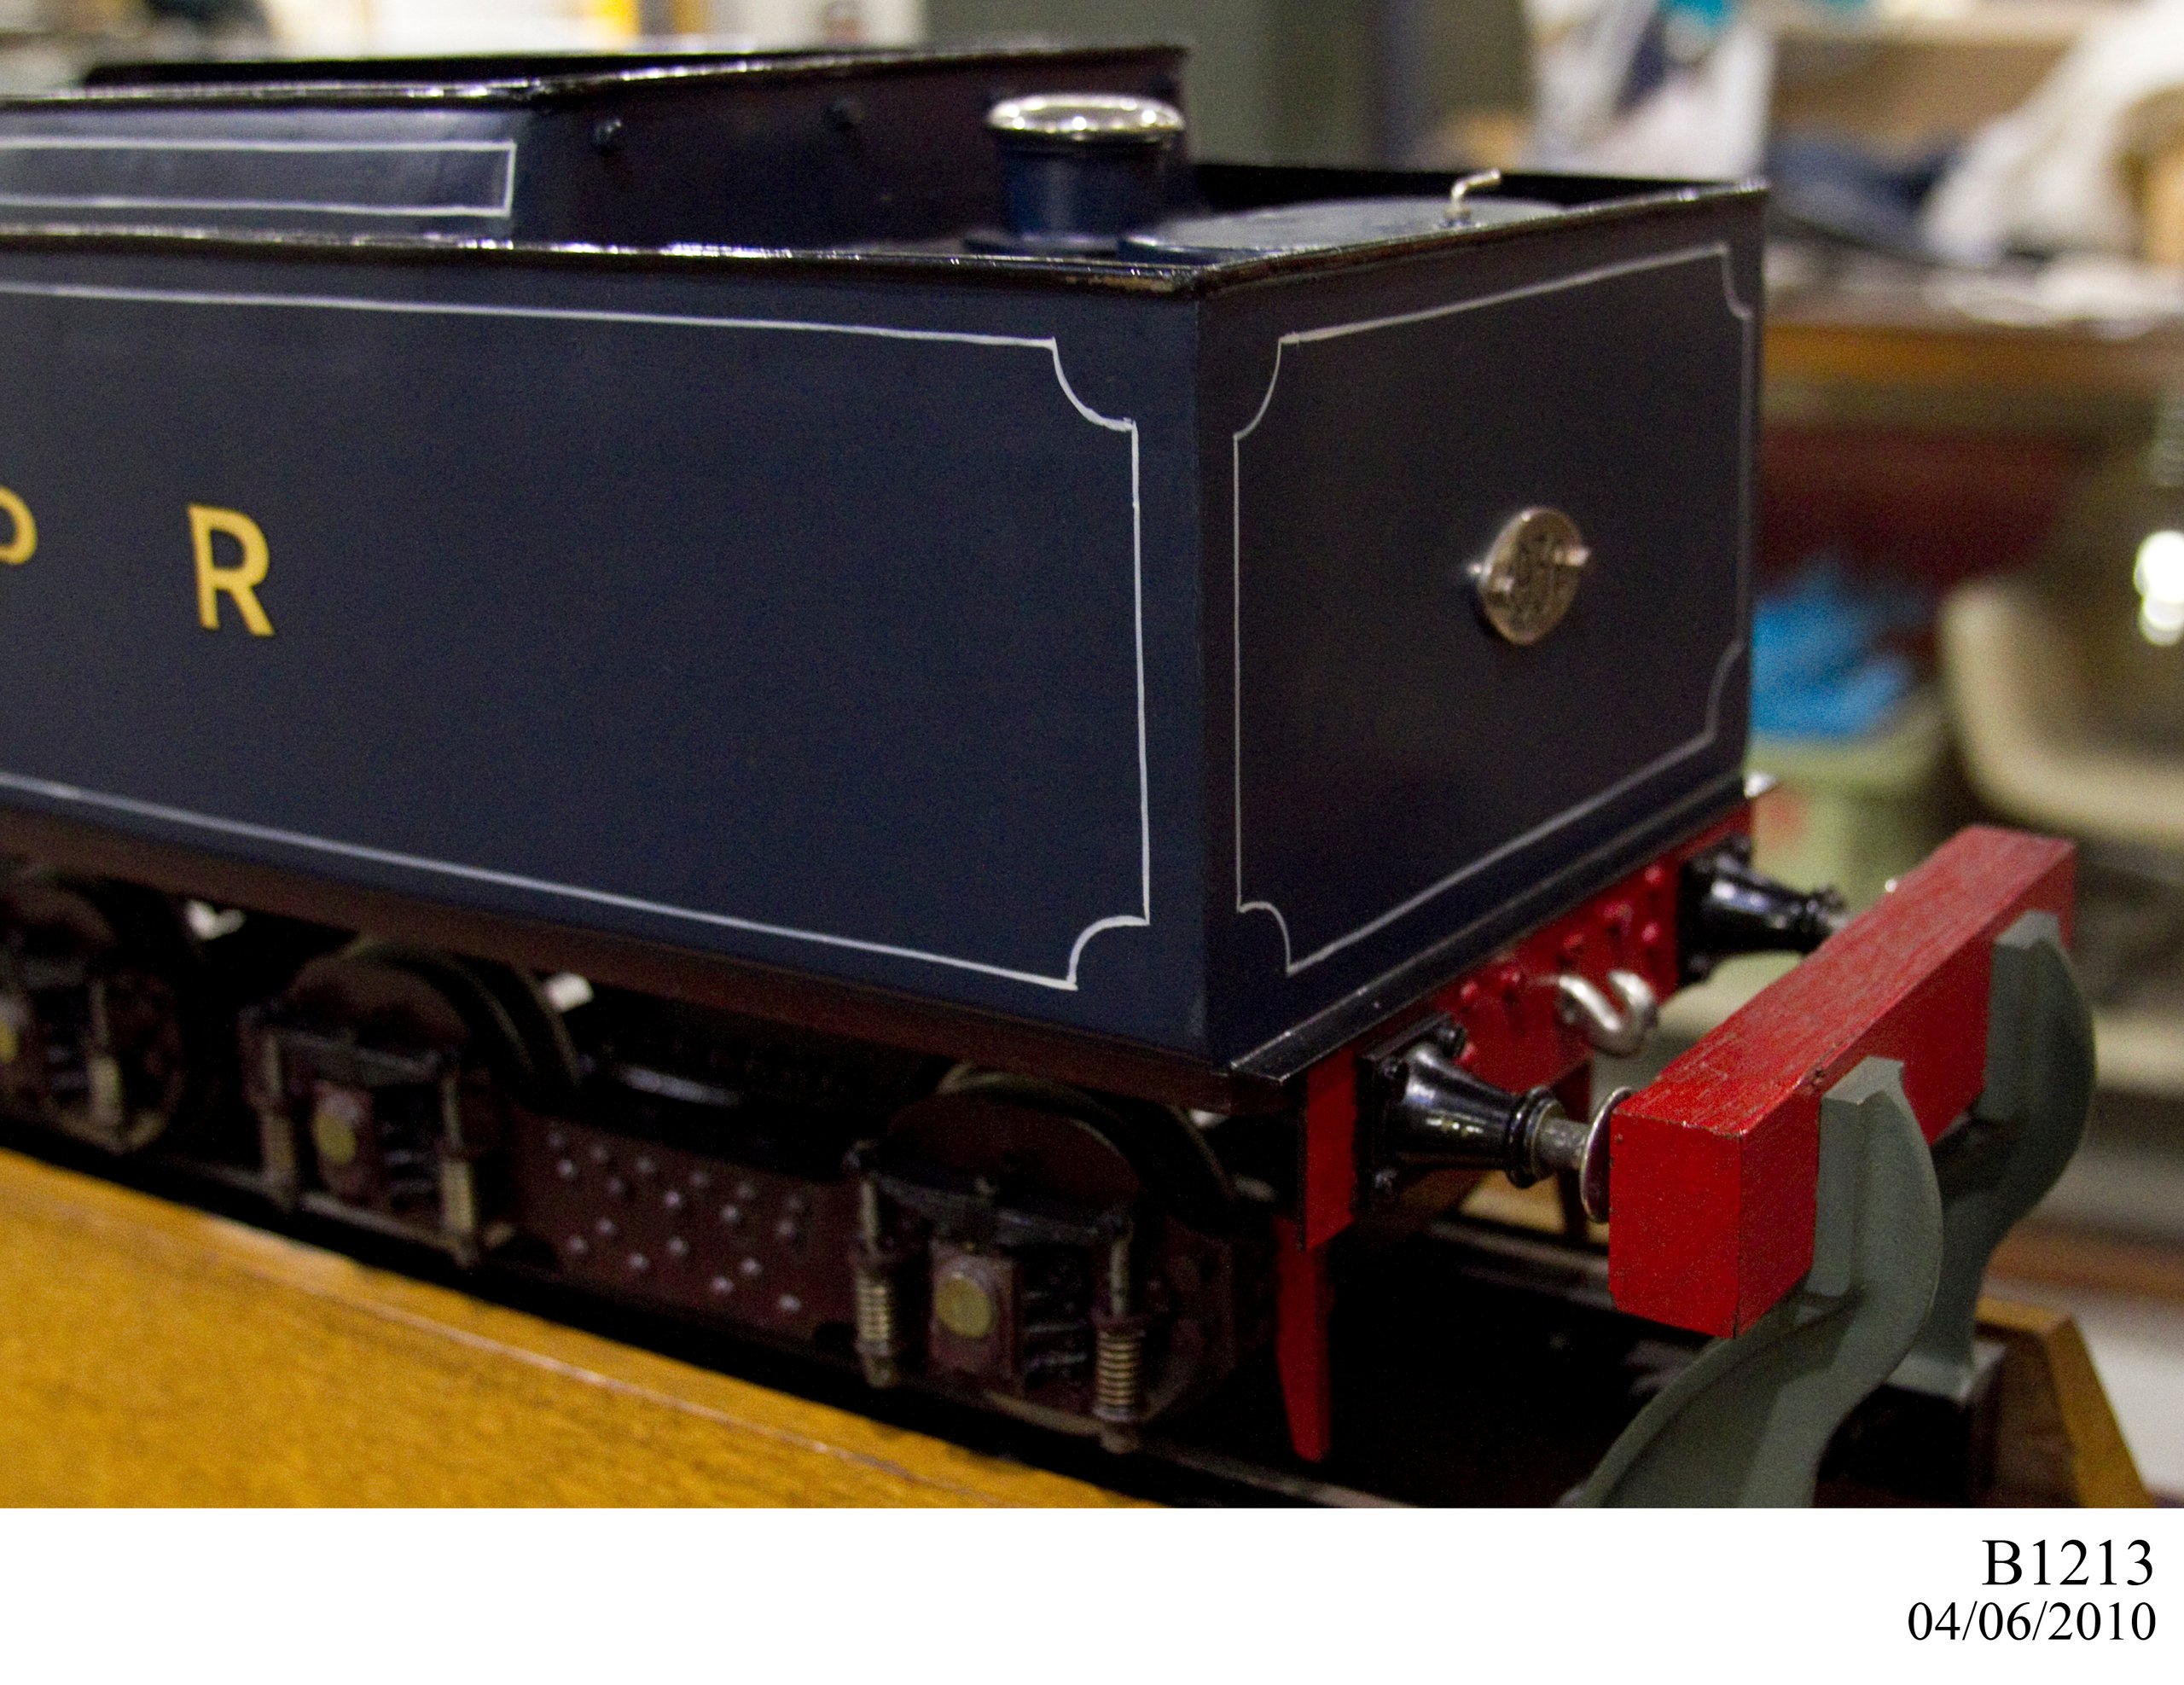 Locomotive model made by Sir George Julius